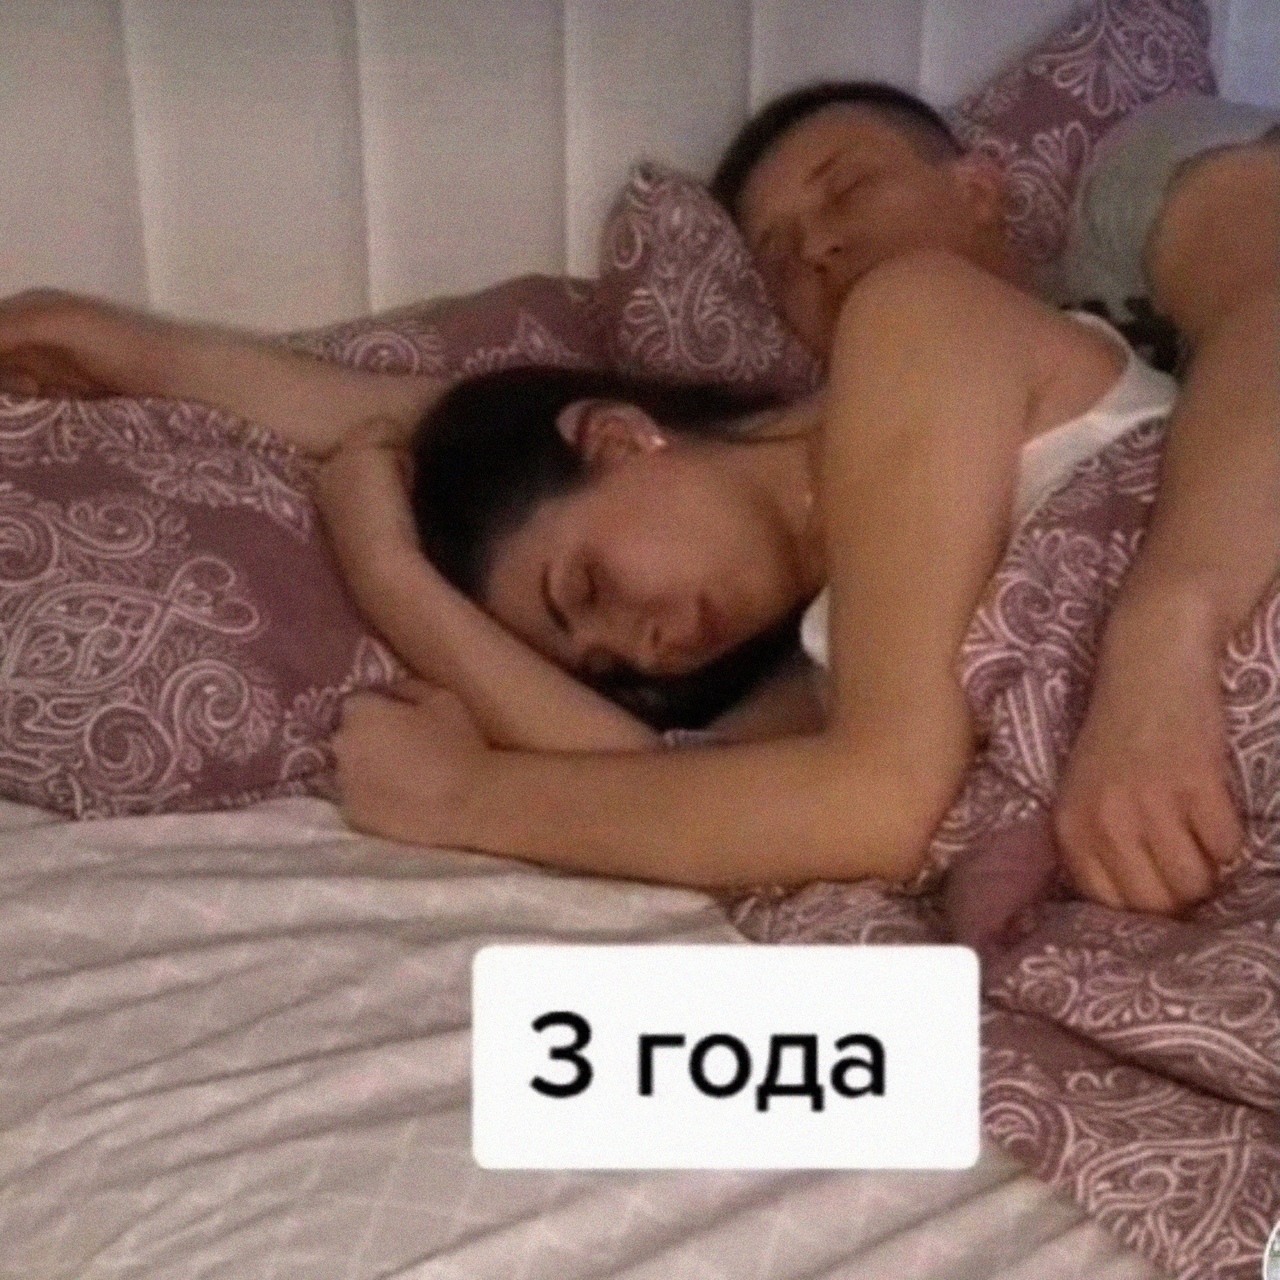 Взрослые брат и сестра спят на одной кровати